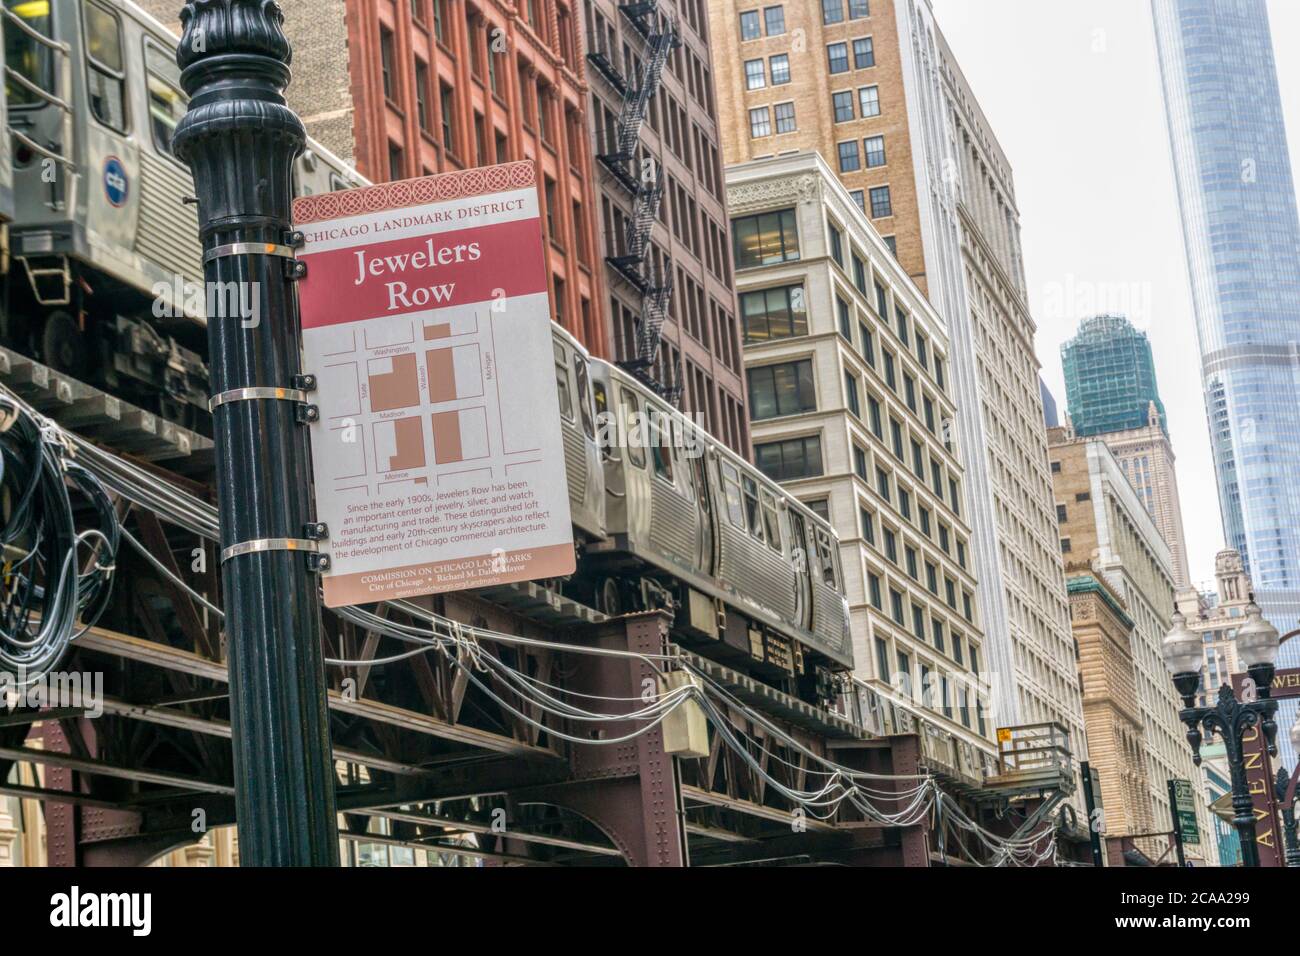 Suivez les panneaux indiquant Jewelers Row, a Chicago Landmark District, sur Wabash Avenue, en passant par le train Chicago El. Banque D'Images